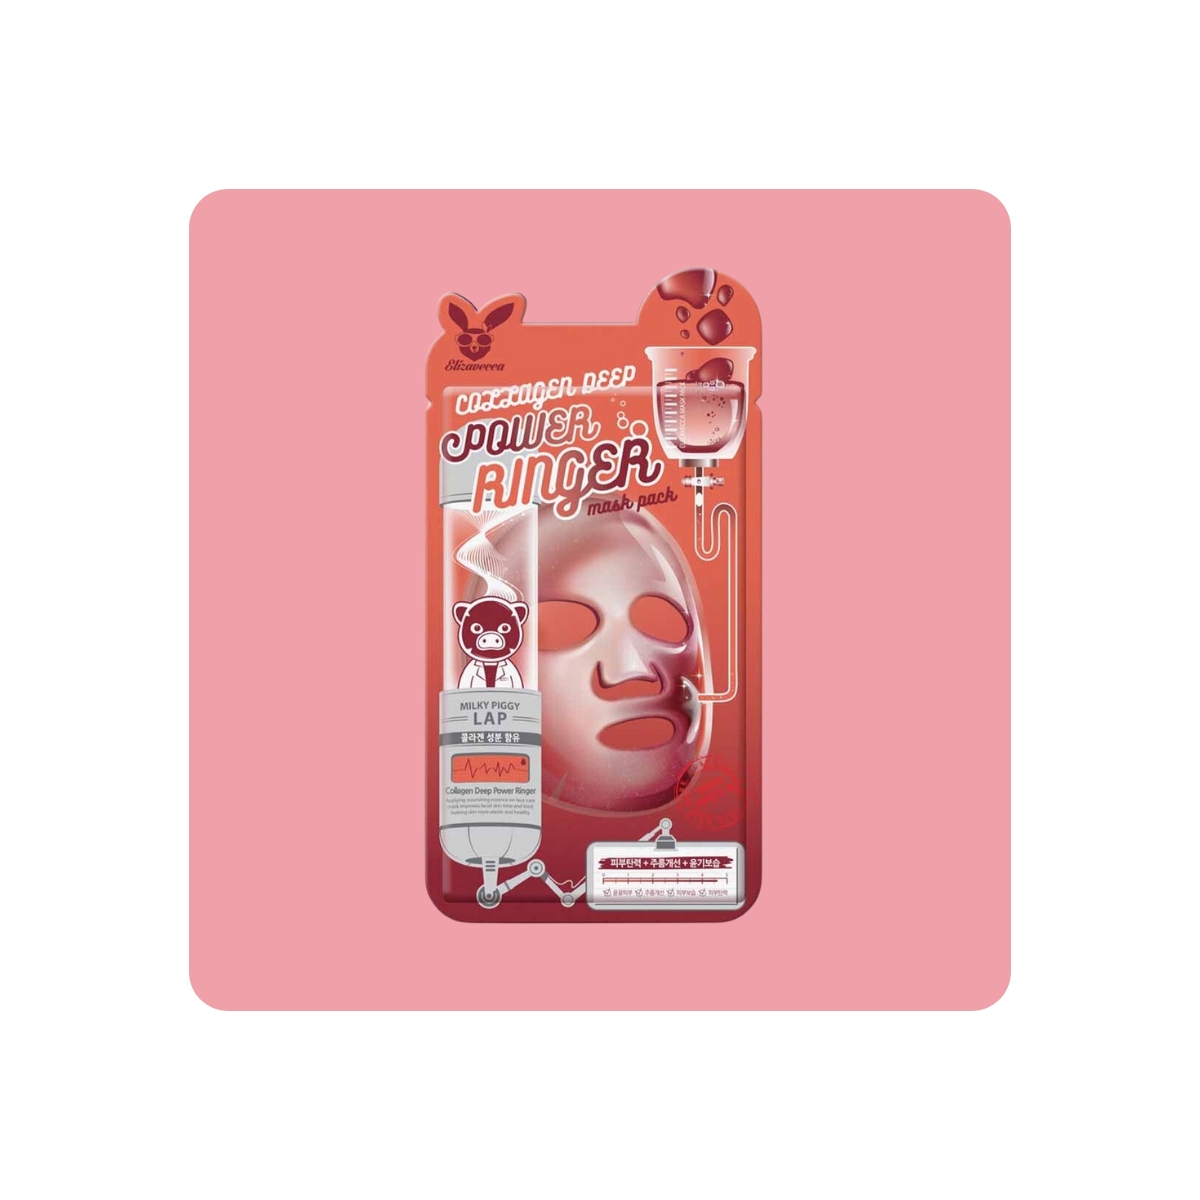 Mascarillas Coreanas de Hoja al mejor precio: Elizavecca Collagen Deep Power Ringer Mask Pack de Elizavecca en Skin Thinks - Piel Seca